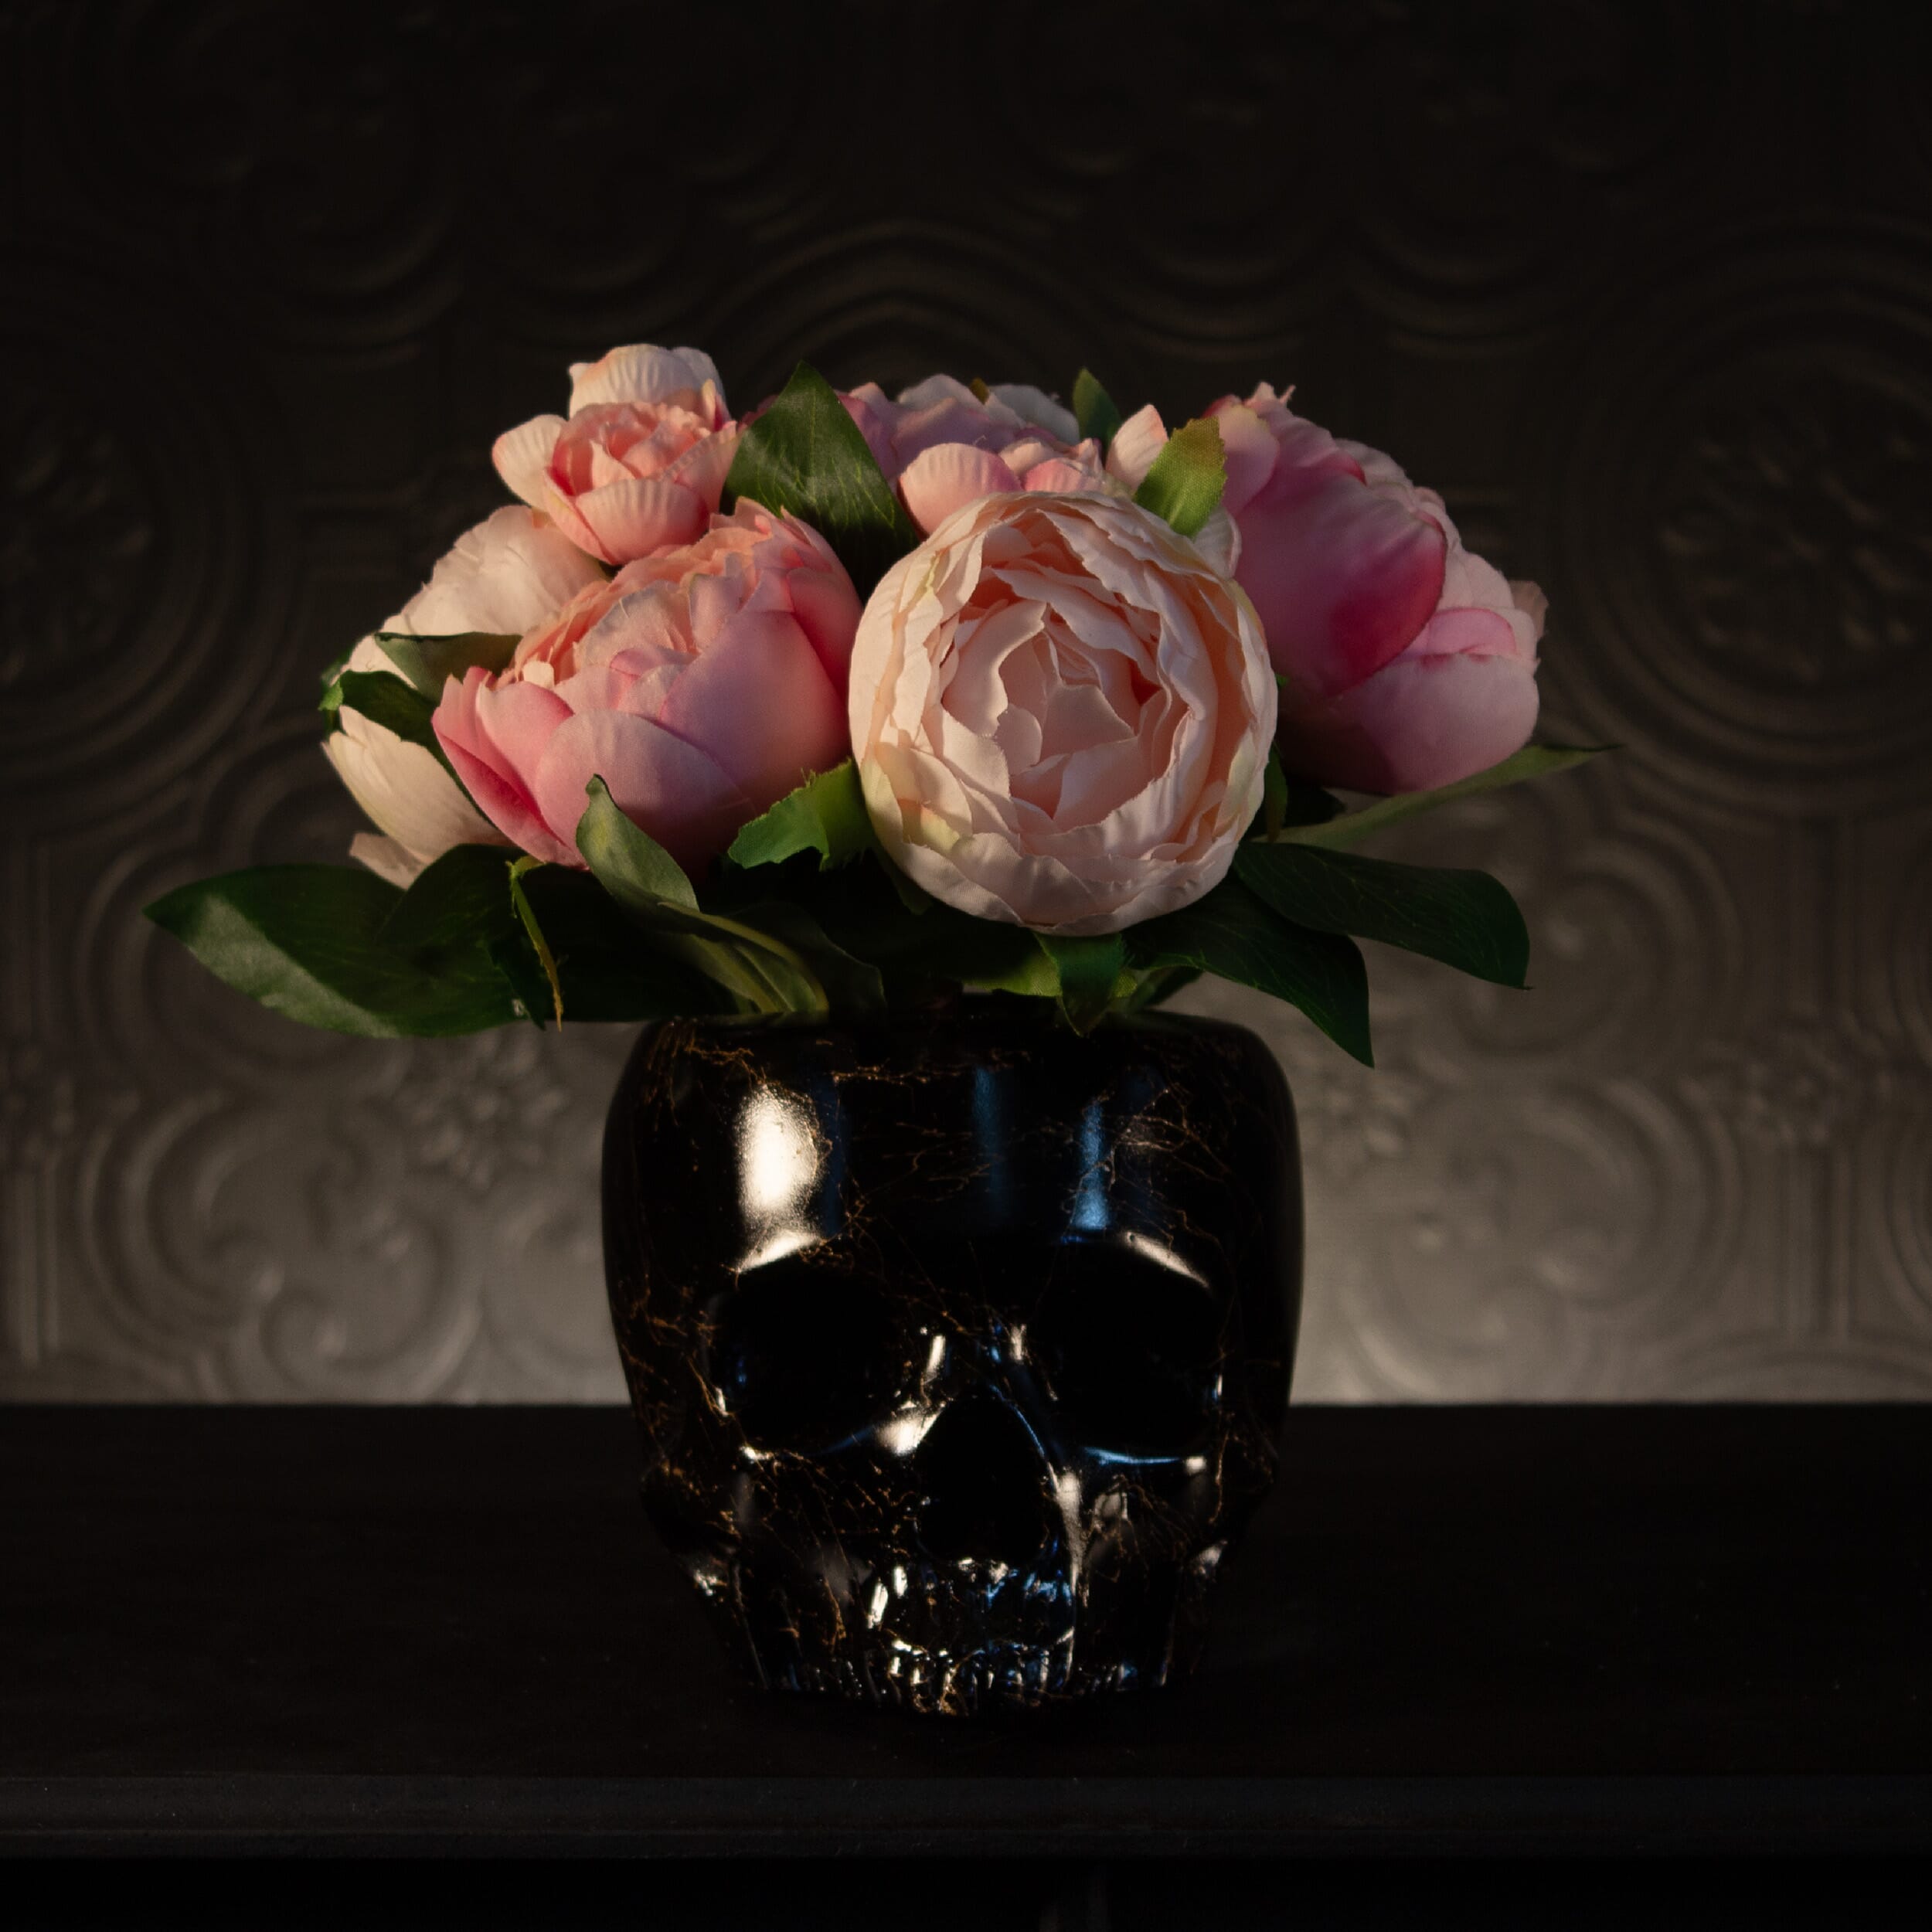 Antoinette Flowerhead - Blush Pink Peonies & Ranunculus